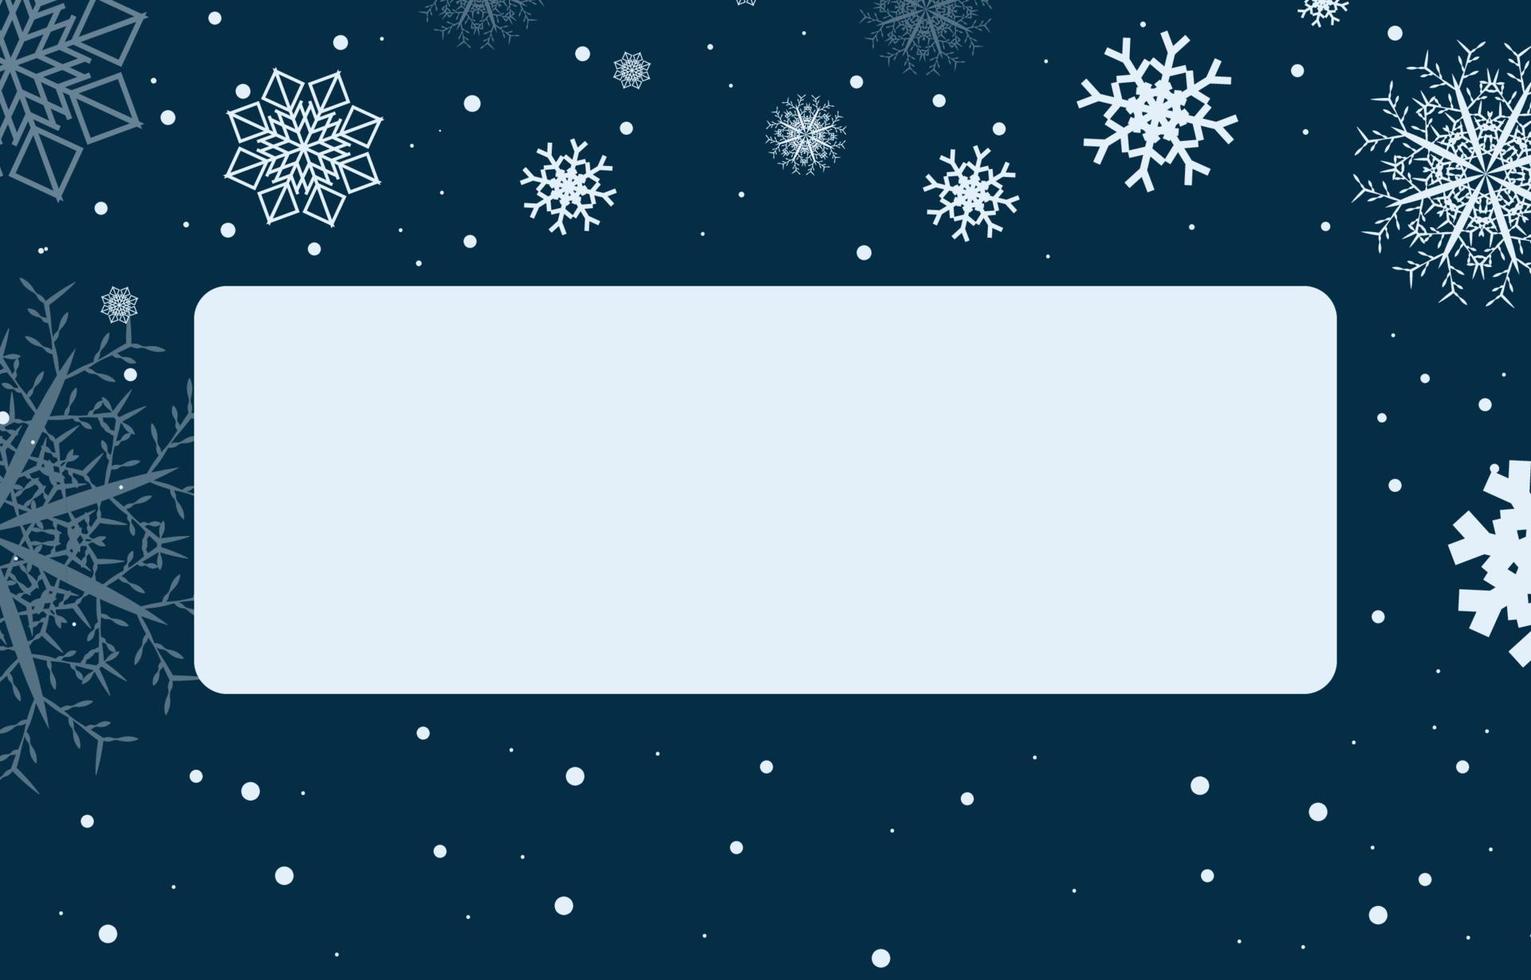 leggero blu vuoto piazza etichetta decorato con i fiocchi di neve vettore illustrazione di inverno. Natale e nuovo anno carta.